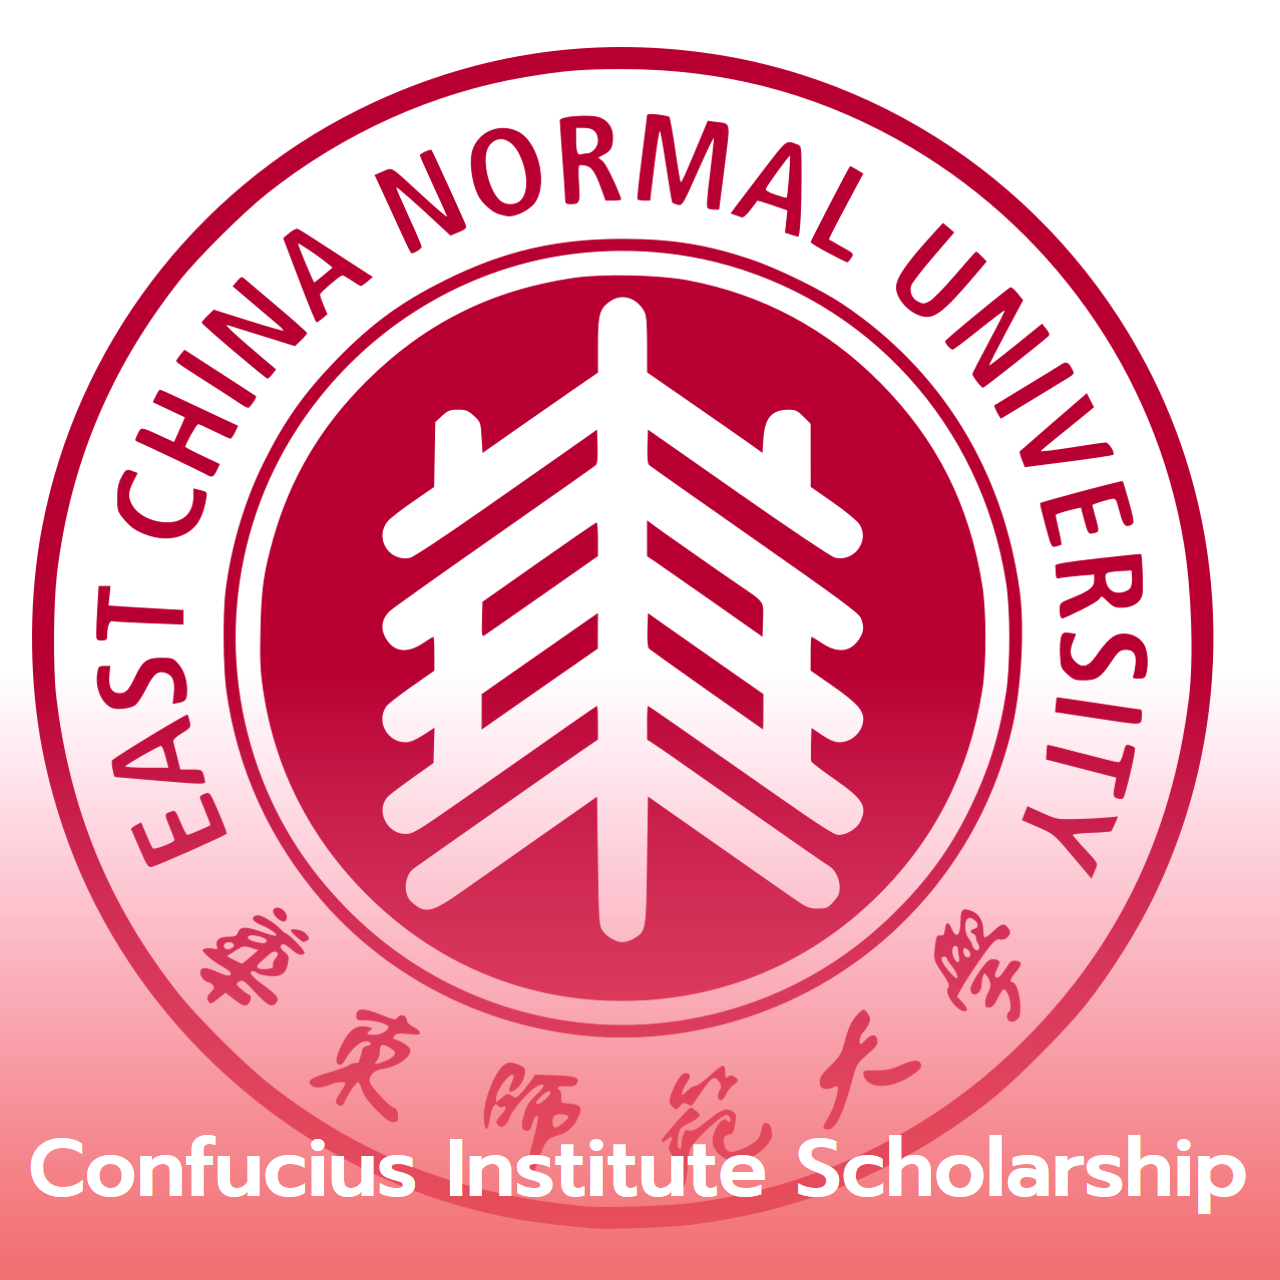  Confucius Institute Scholarship: CIS